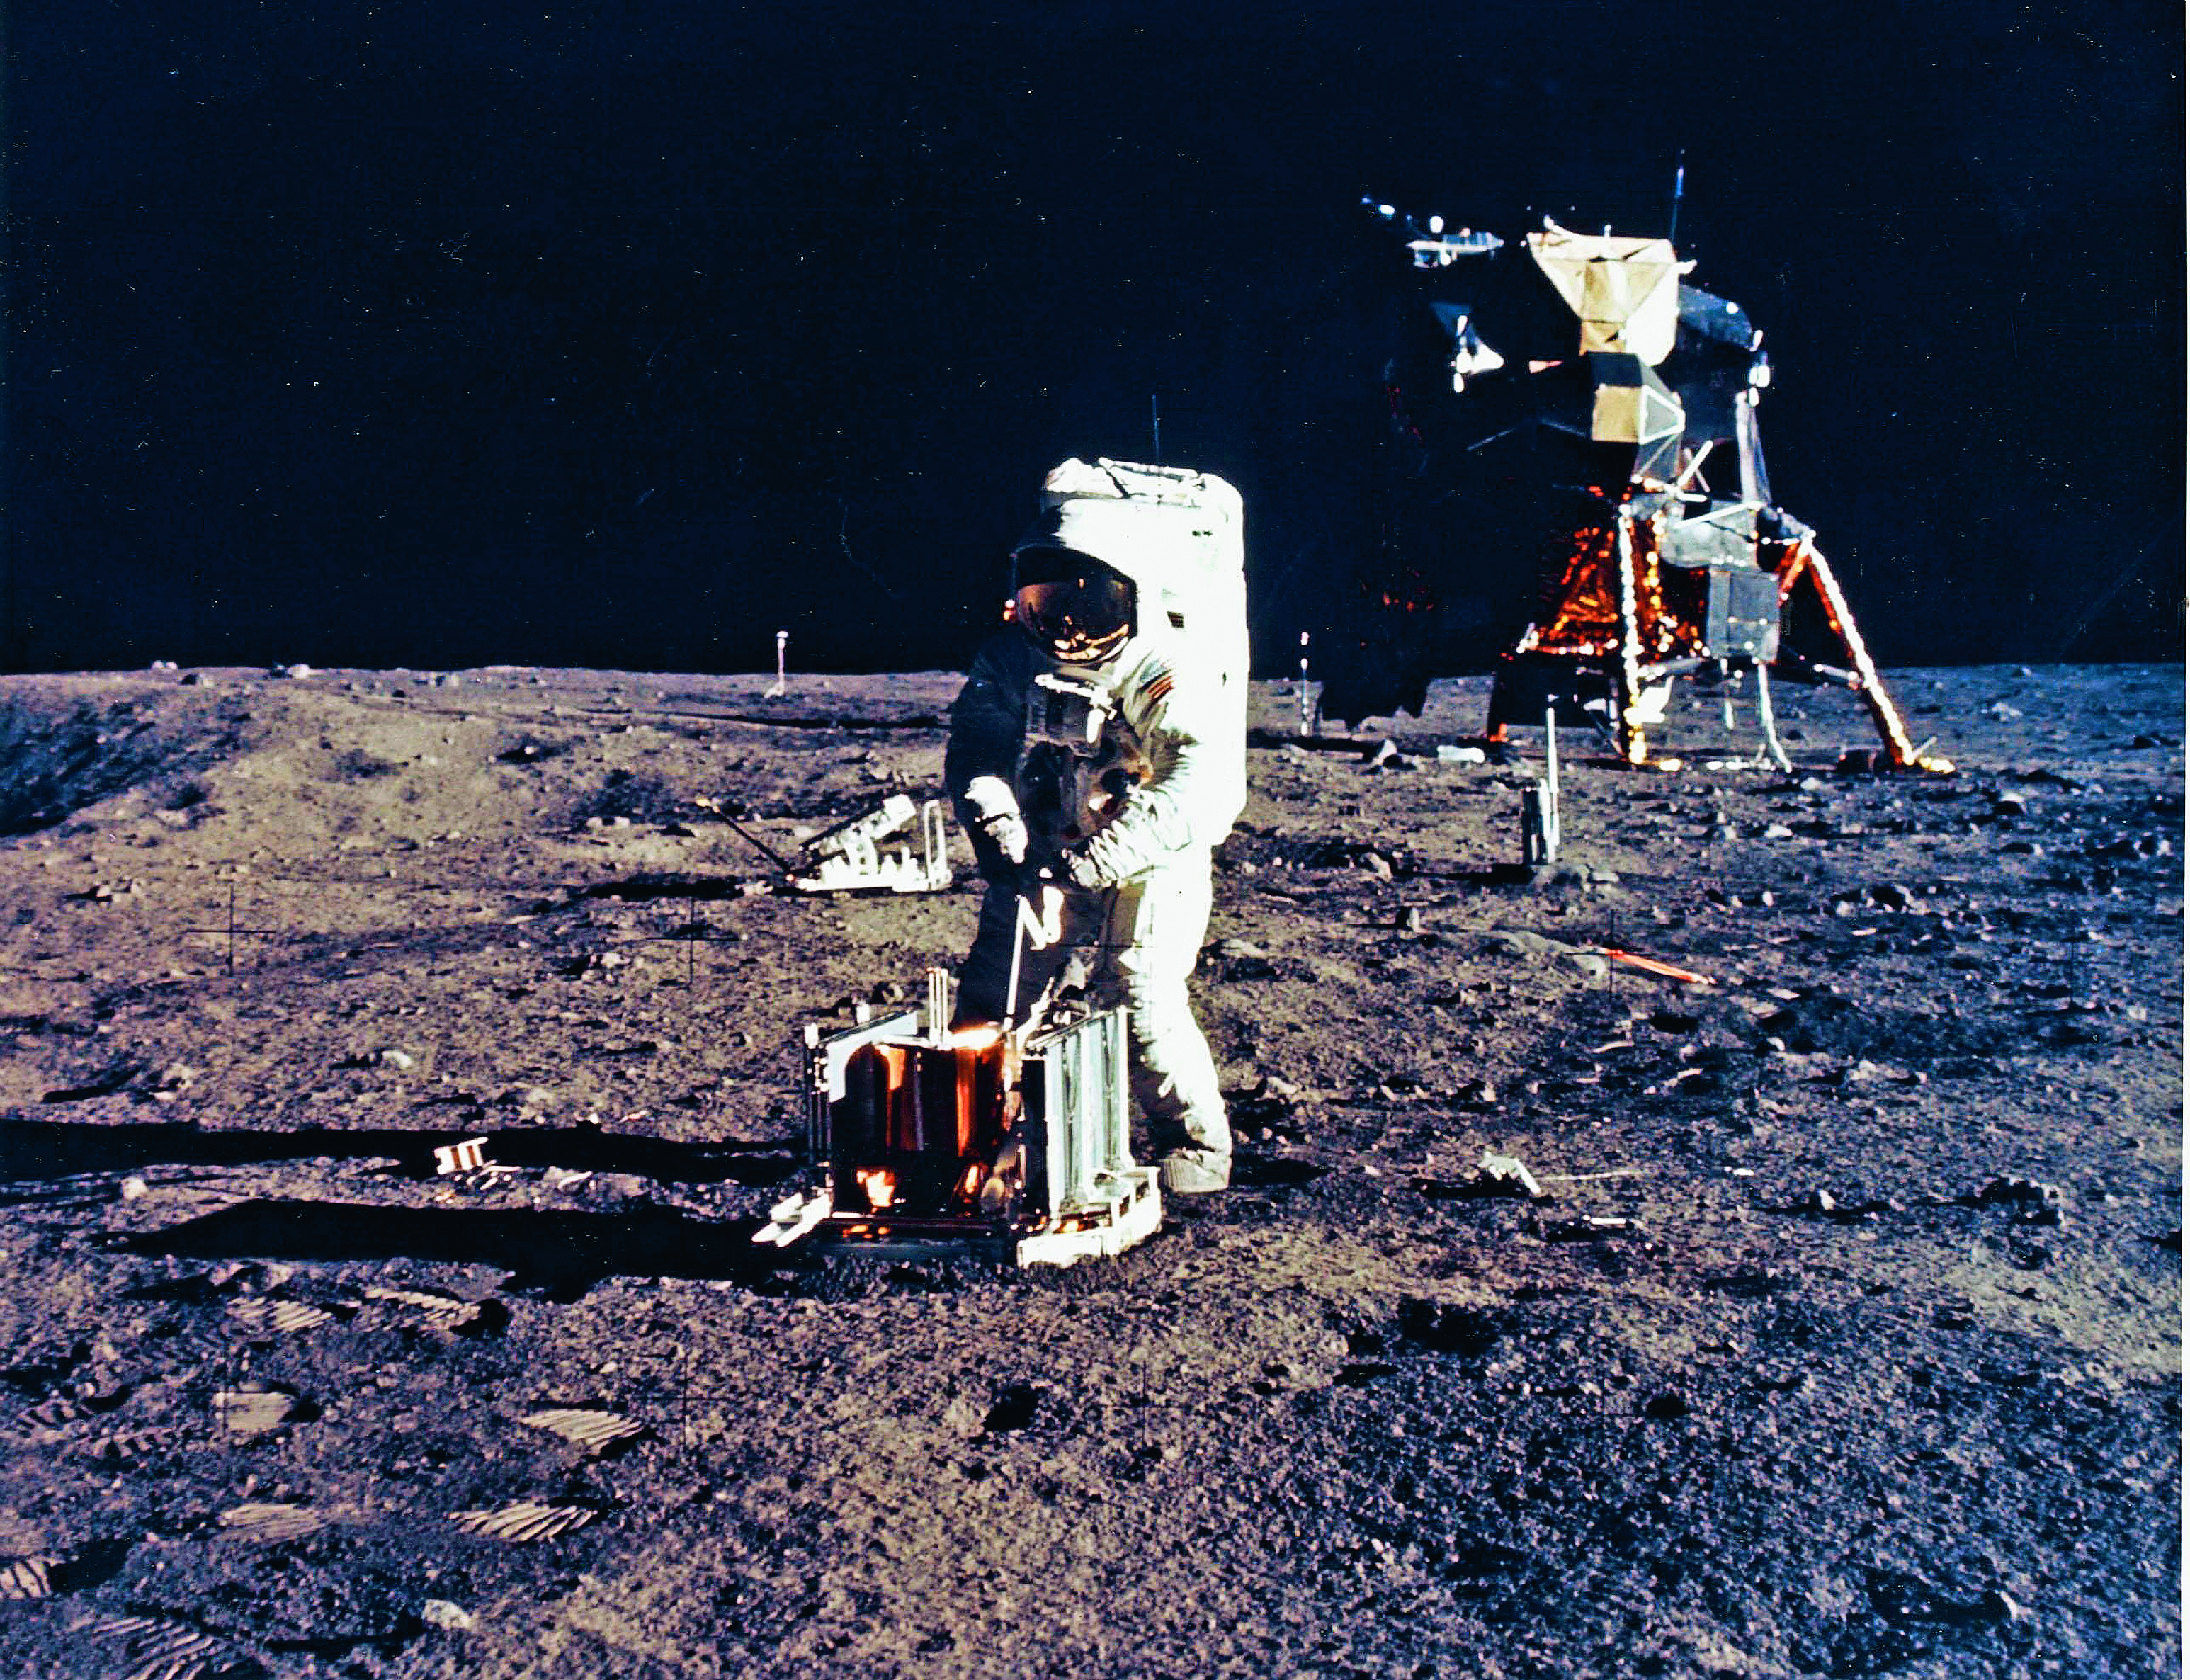 Космонавты высадились на луне. Аполлон 11 1969. Апполо 11 на Луне.